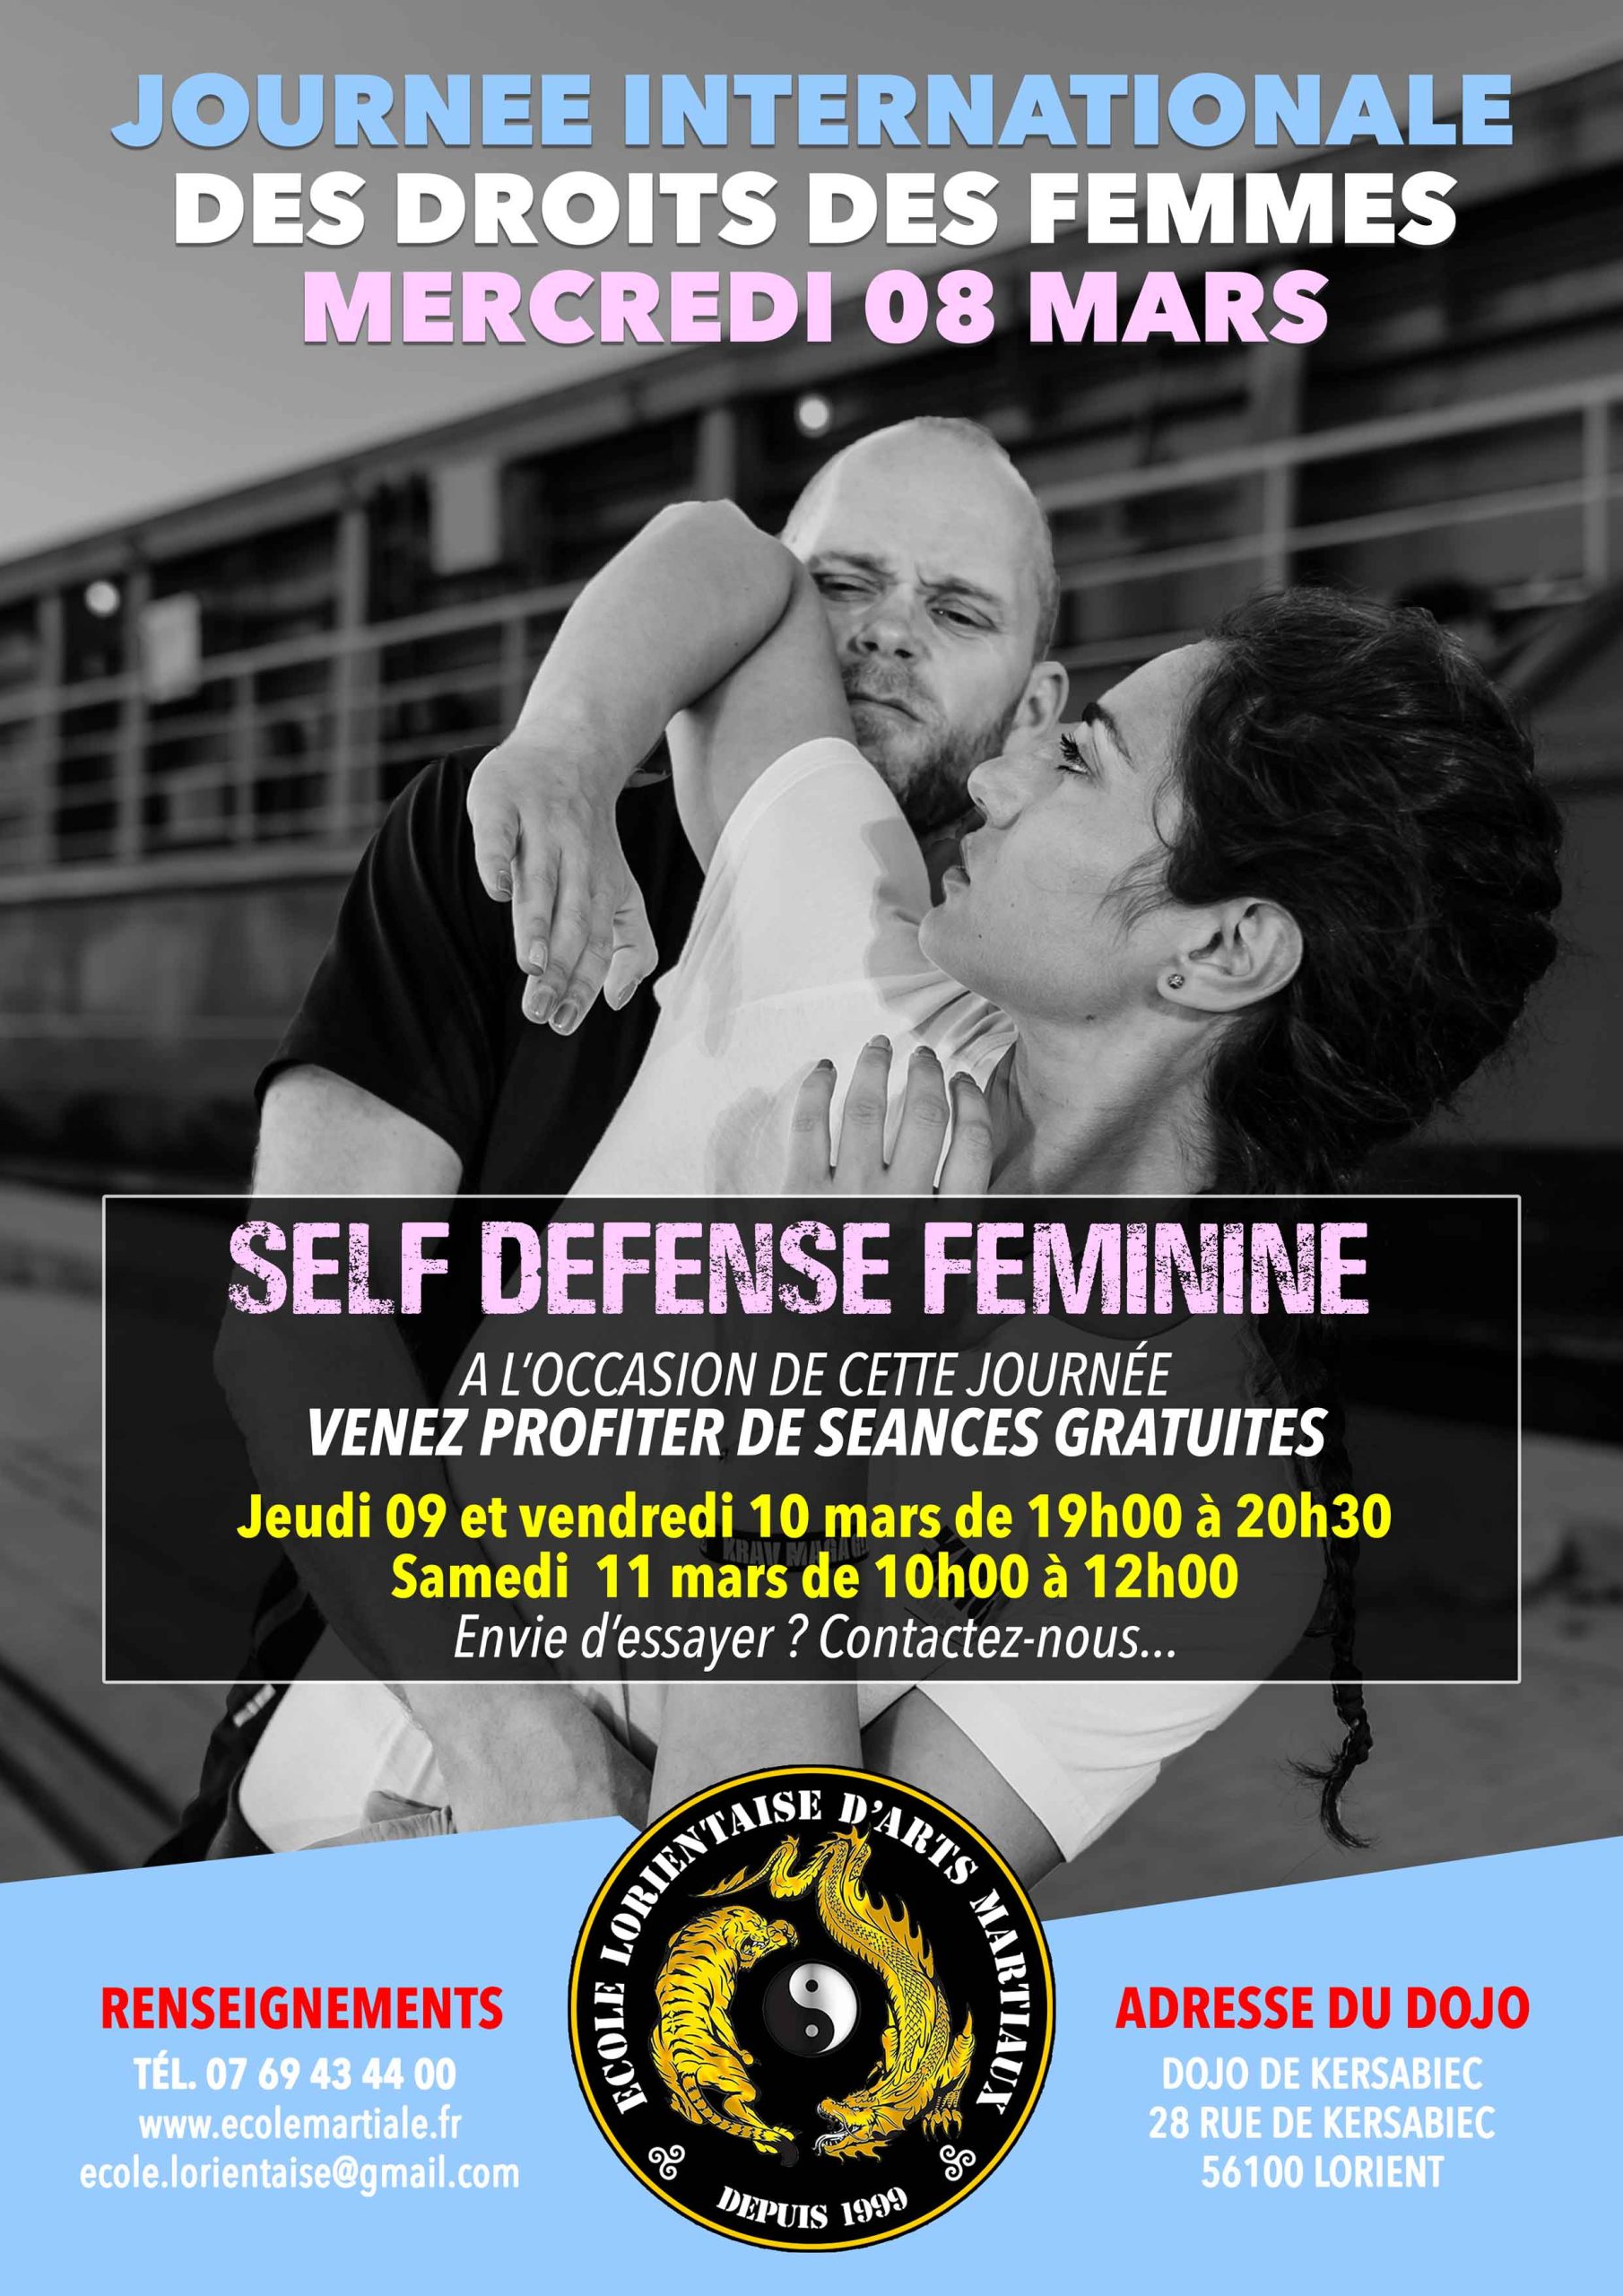 Cours gratuits de self-défense féminine à Paris